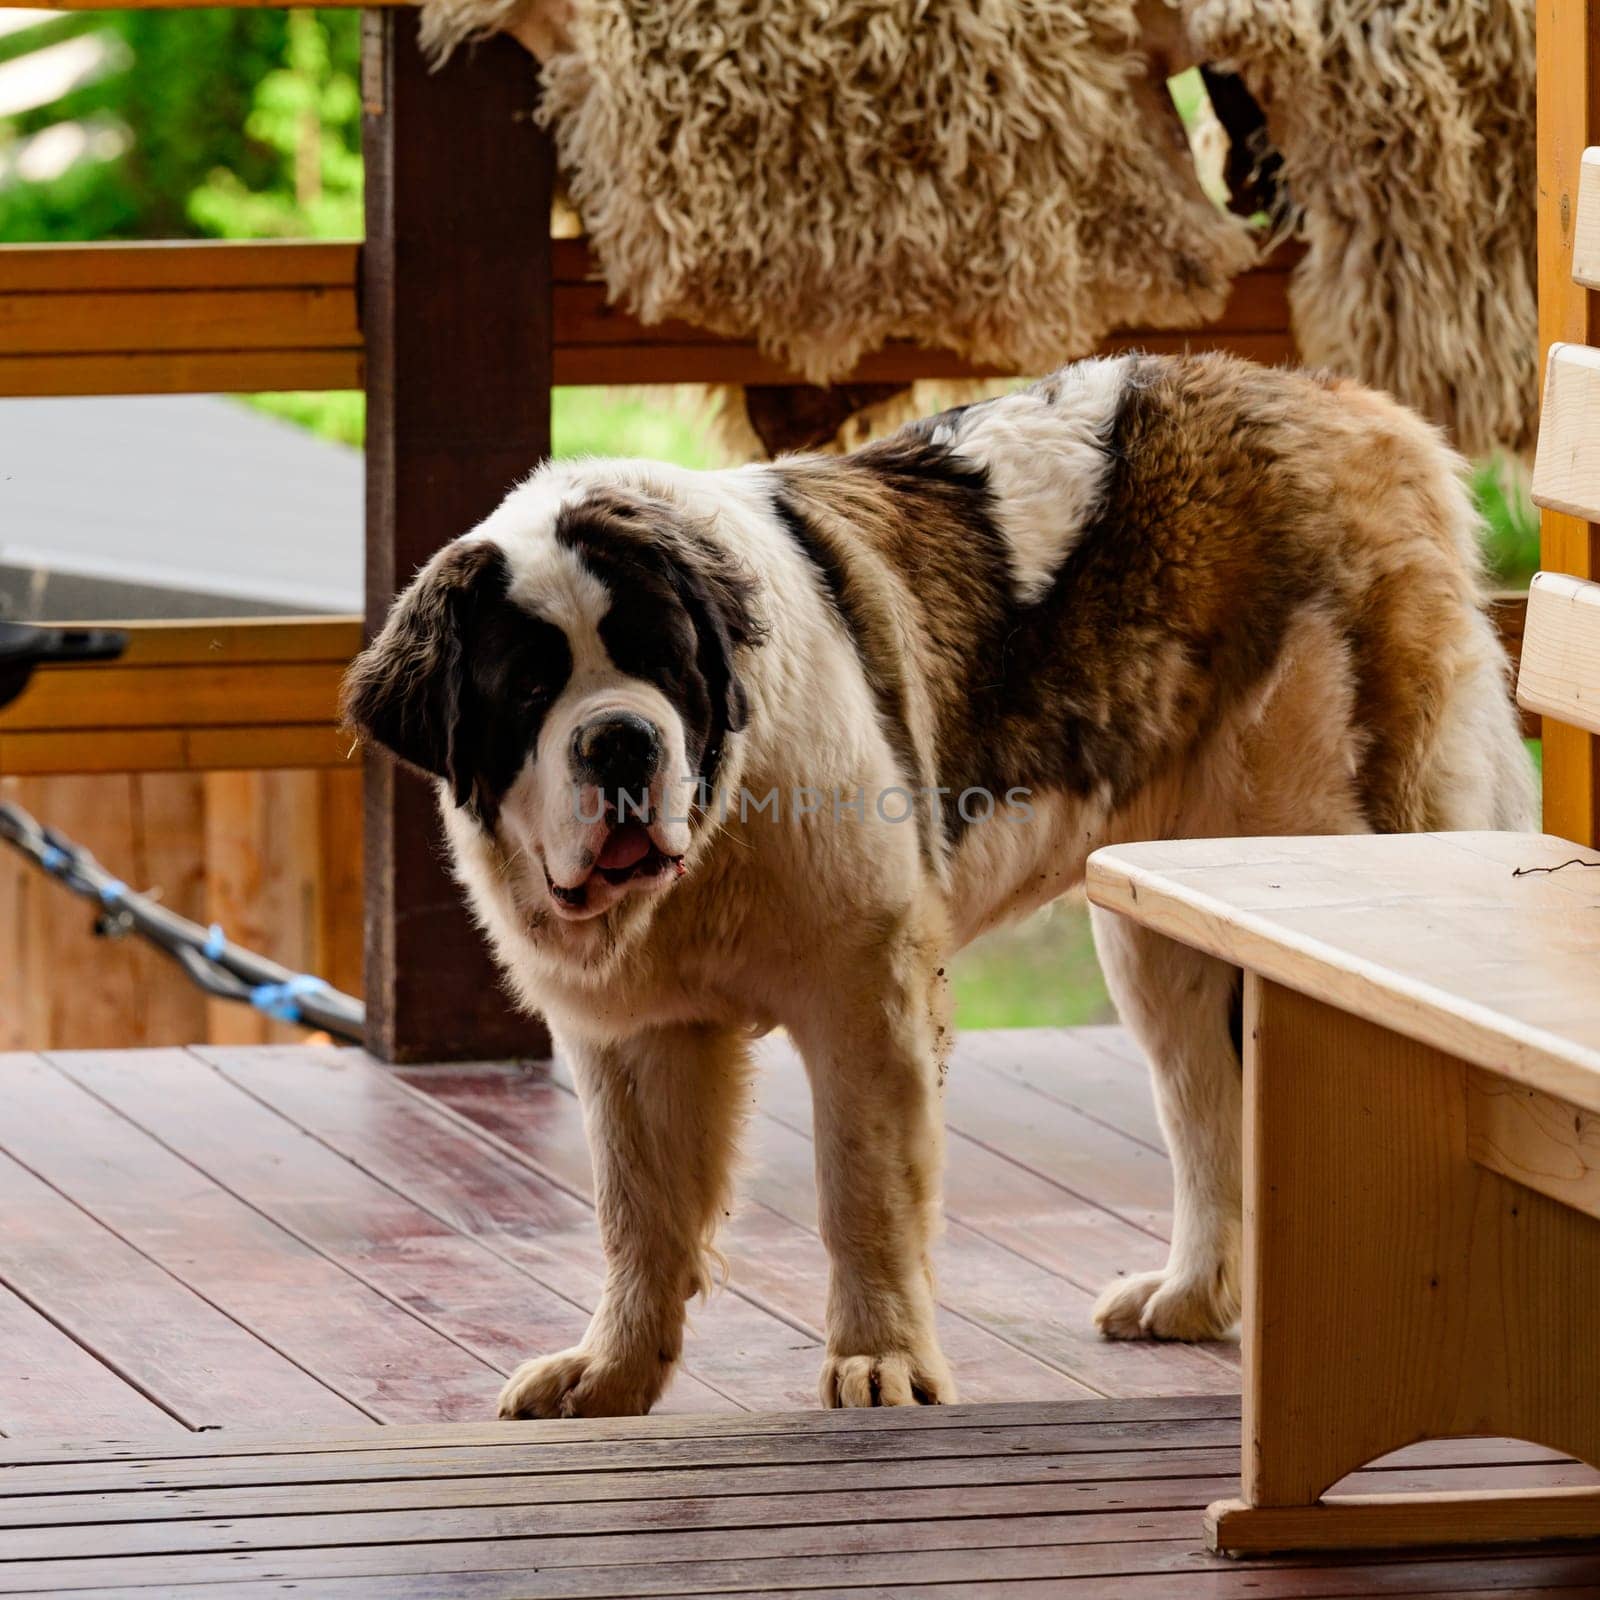 Saint Bernard standing on an open wooden terrace, Saint Bernard is one of the largest dog breeds in the world.